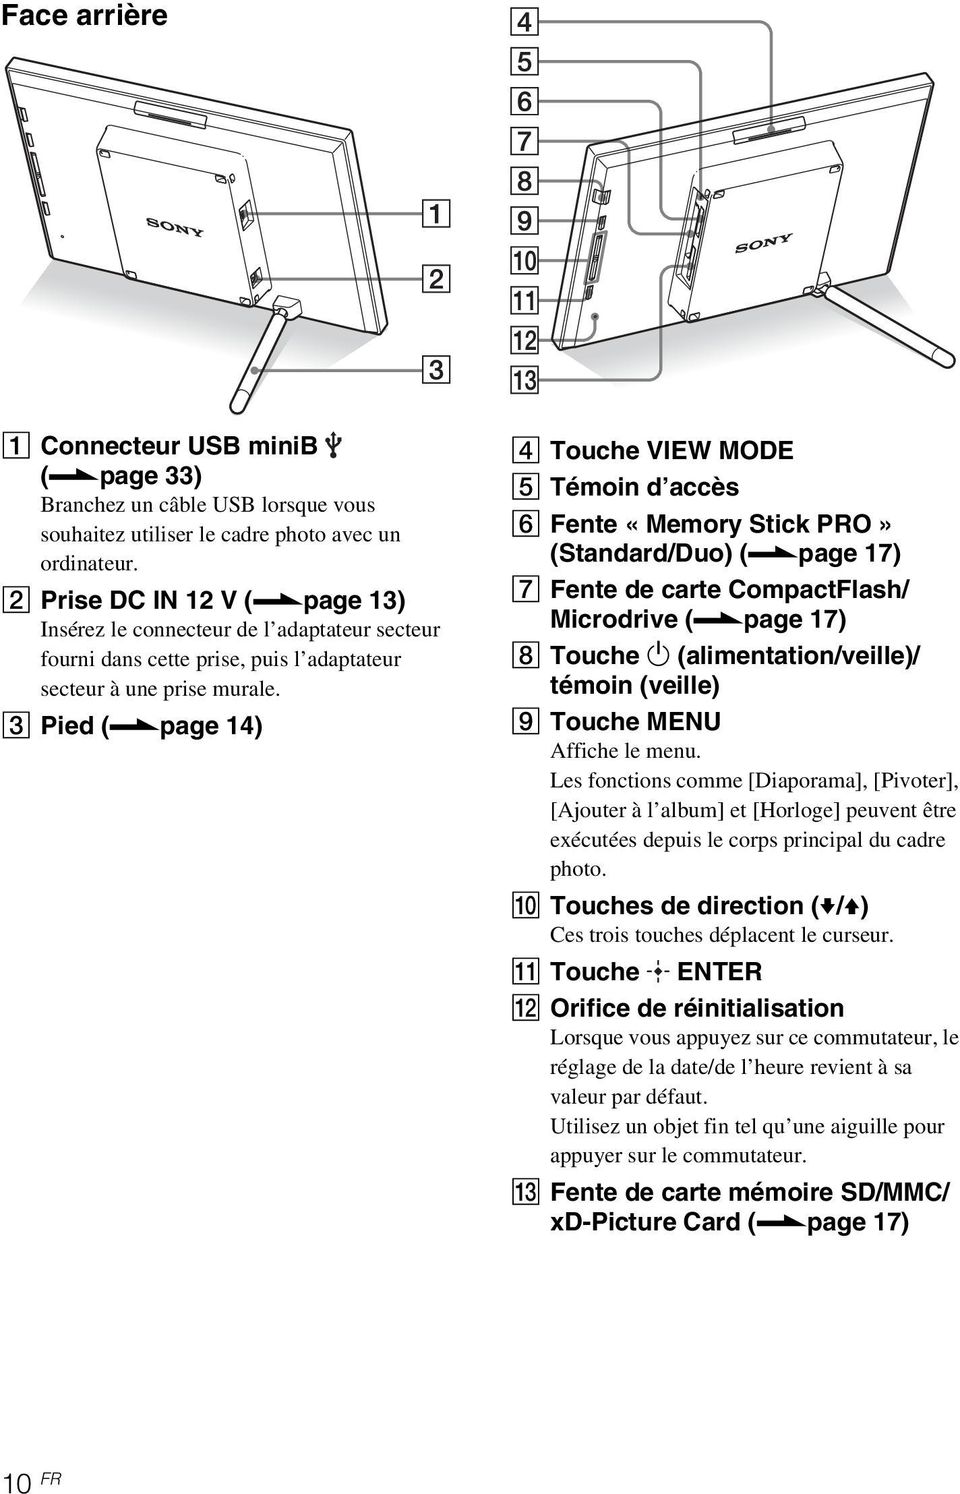 page 14) D Touche VIEW MODE E Témoin d accès F Fente «Memory Stick PRO» (Standard/Duo) (.page 17) G Fente de carte CompactFlash/ Microdrive (.